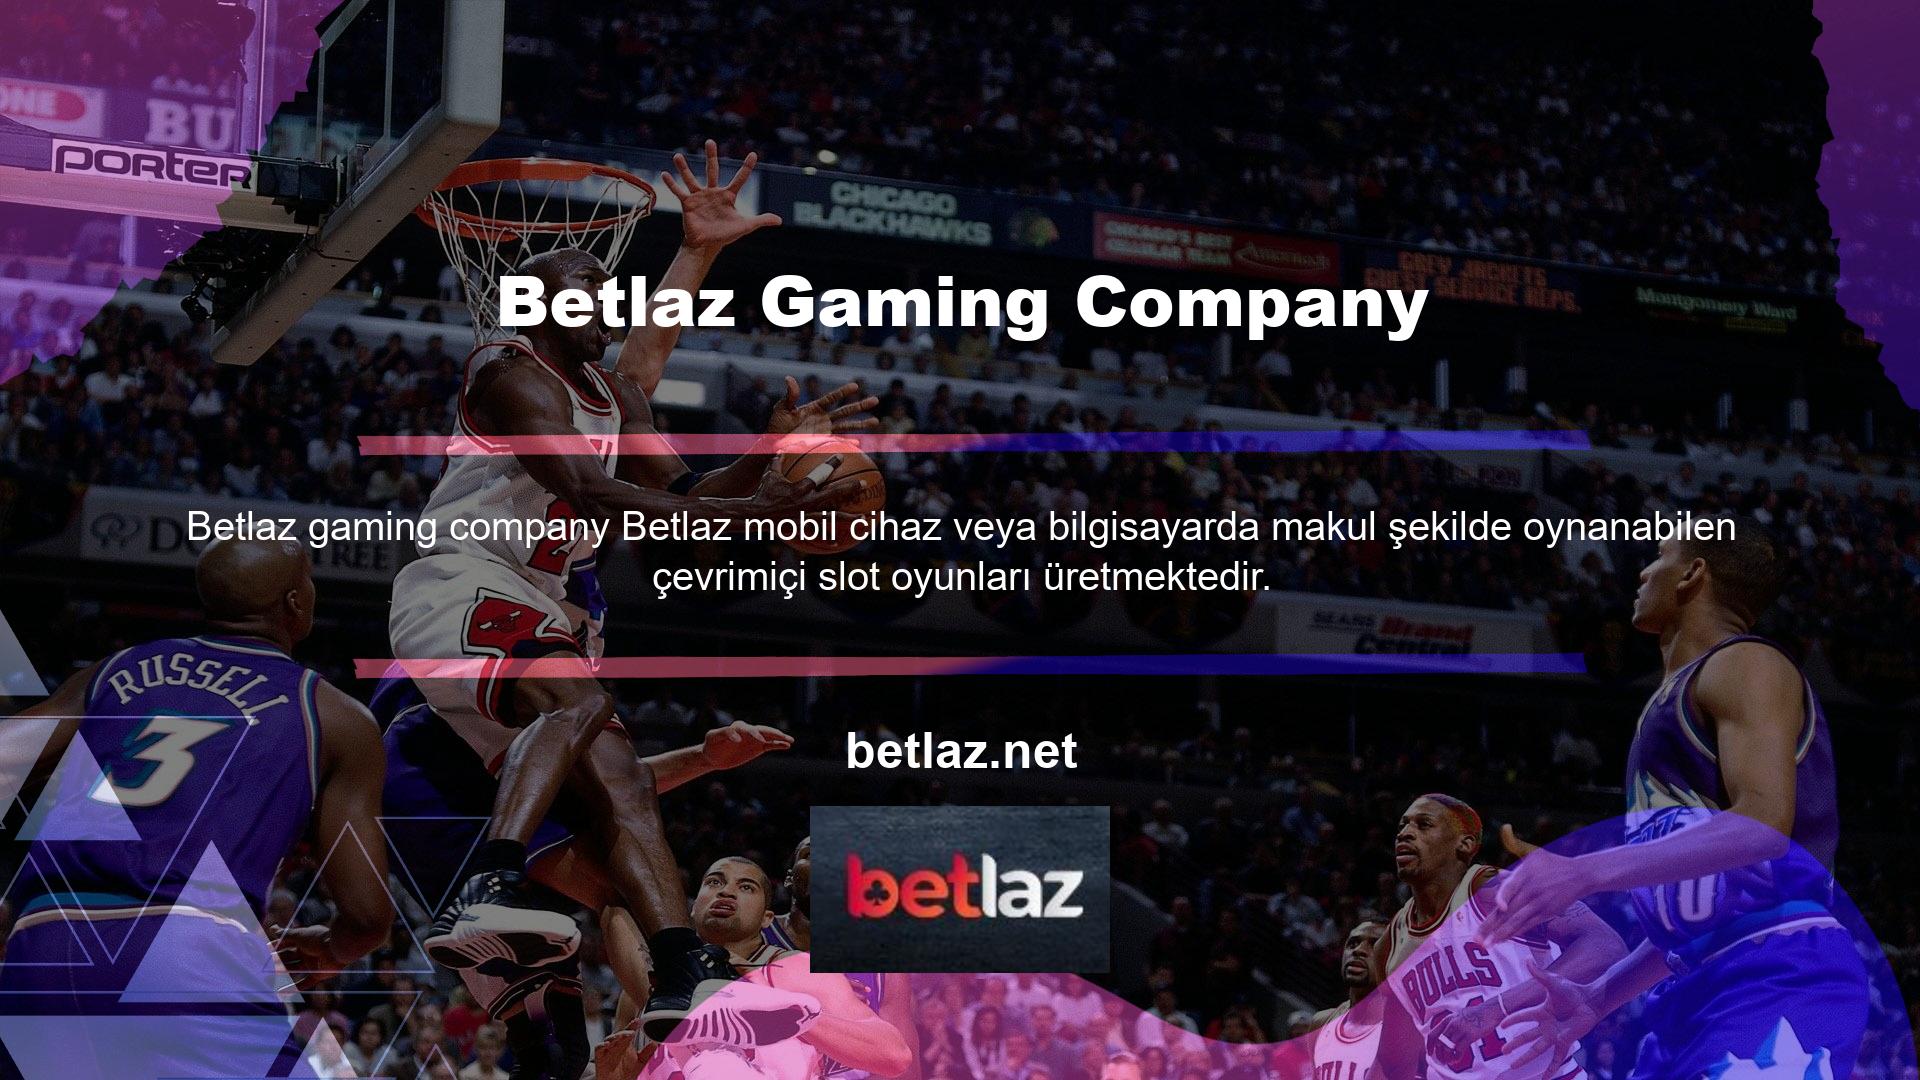 Betlaz Gaming Company tarafından sunulan çevrimiçi Casino oyunlarına mobil cihazlar veya bilgisayarlar aracılığıyla erişilebilir ve adreslenebilir pazarlarda mevcuttur